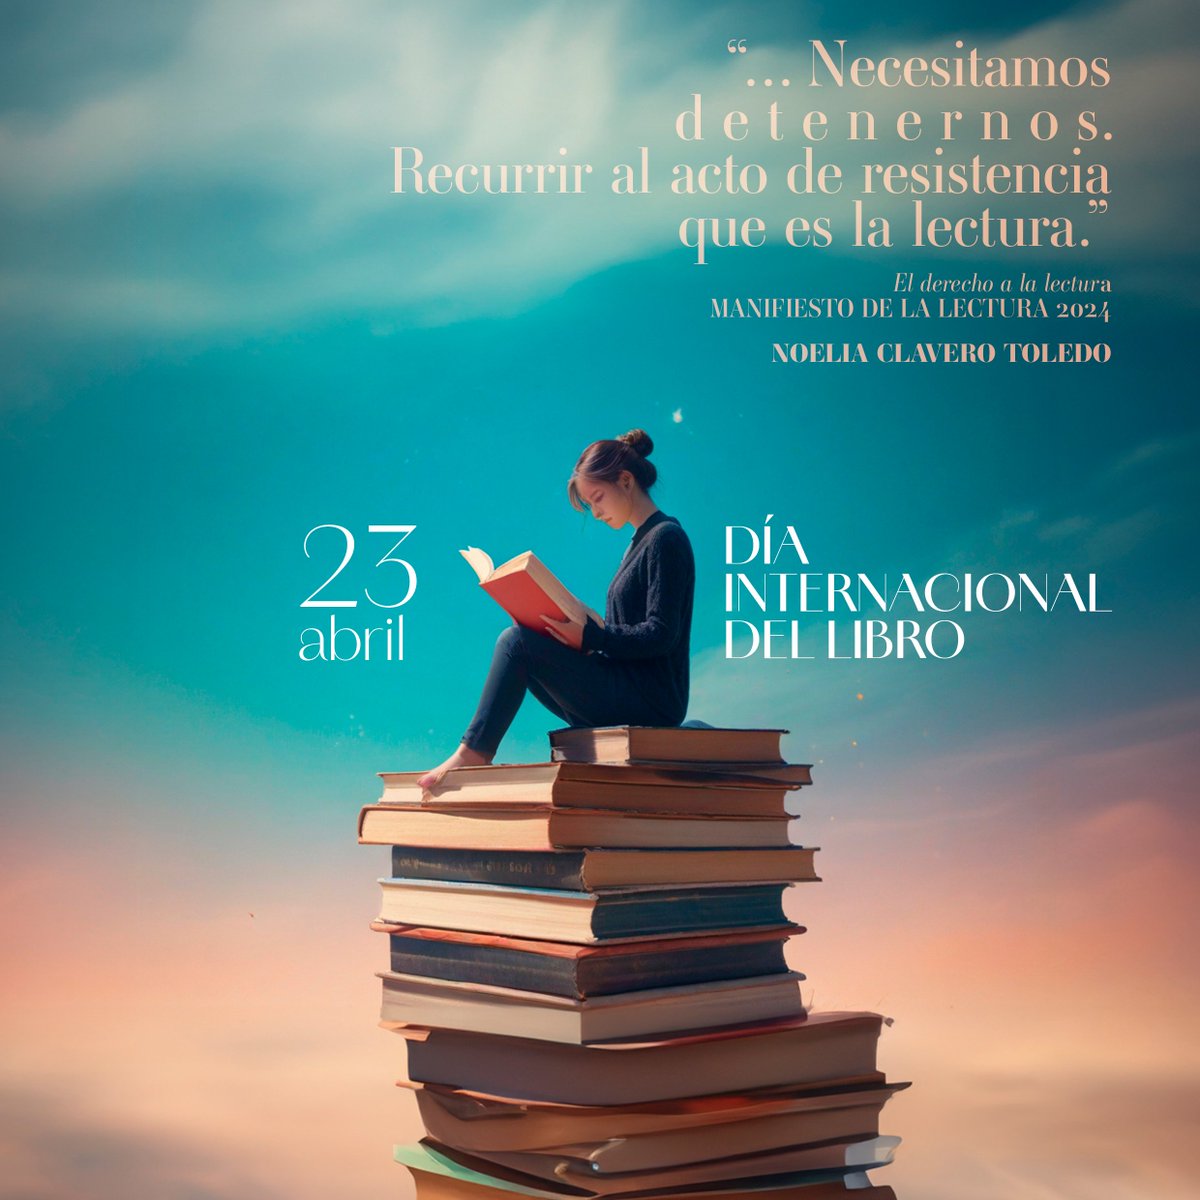 ¡Feliz #DíaDelLibro! 📖 Te invitamos a celebrar este #23Abril con la lectura del manifiesto 'El derecho a la lectura', de Noelia Clavero, que nos propone @letrasandalucia 👉lajunta.es/4qvji @CulturaAND @AlmeriaJunta @JaenJunta @JuntaCordoba @JuntaSevilla @HuelvaJunta